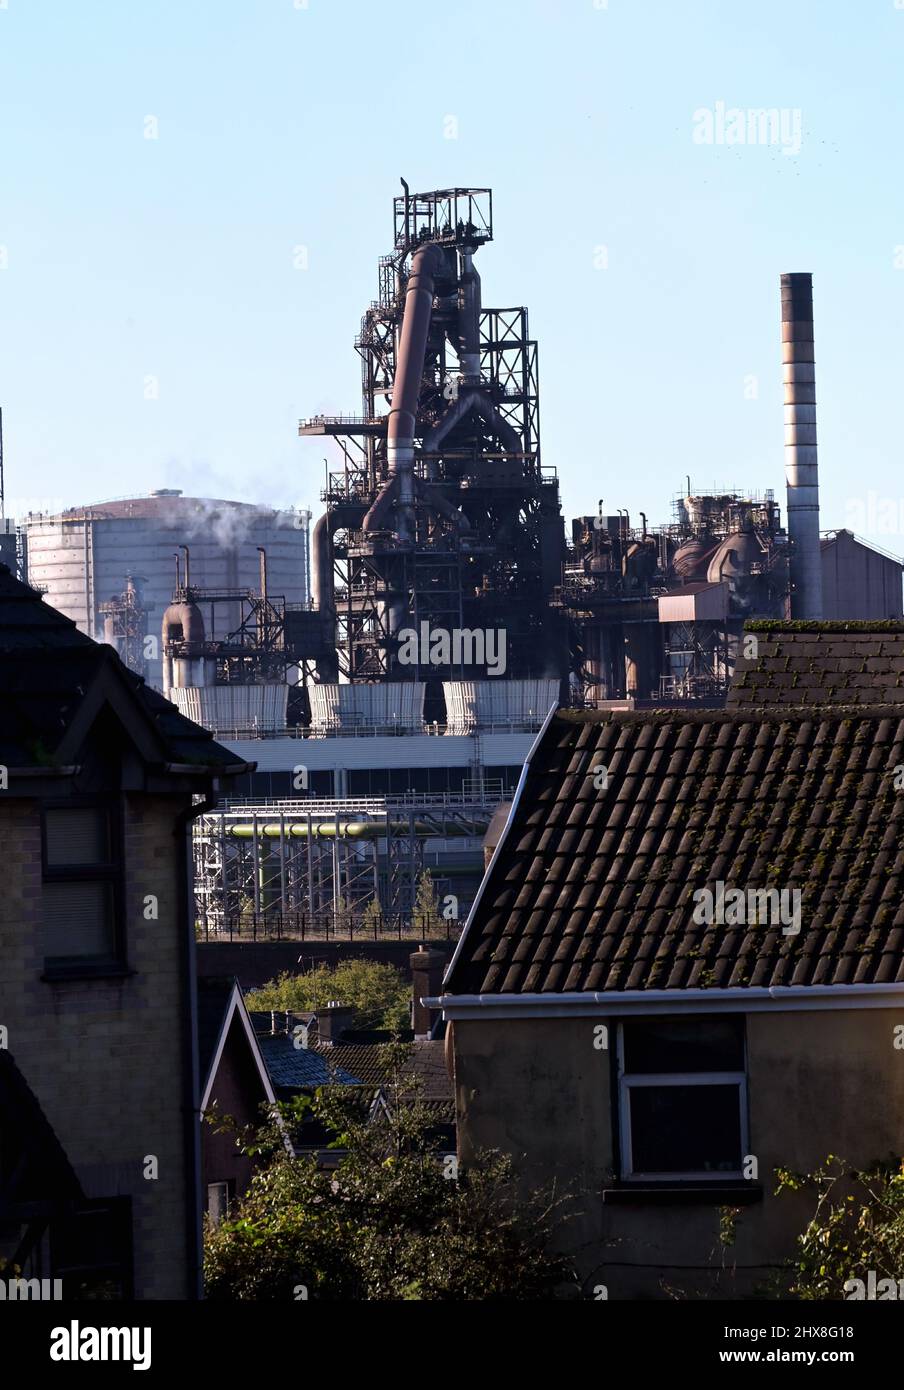 Feature zu Port Talbot und Aberafan, die fragen, wie die Stadt die Pandemie überlebt hat. Die riesige Tata Steel Port Talbot Pflanze Bild von Richard Willia Stockfoto